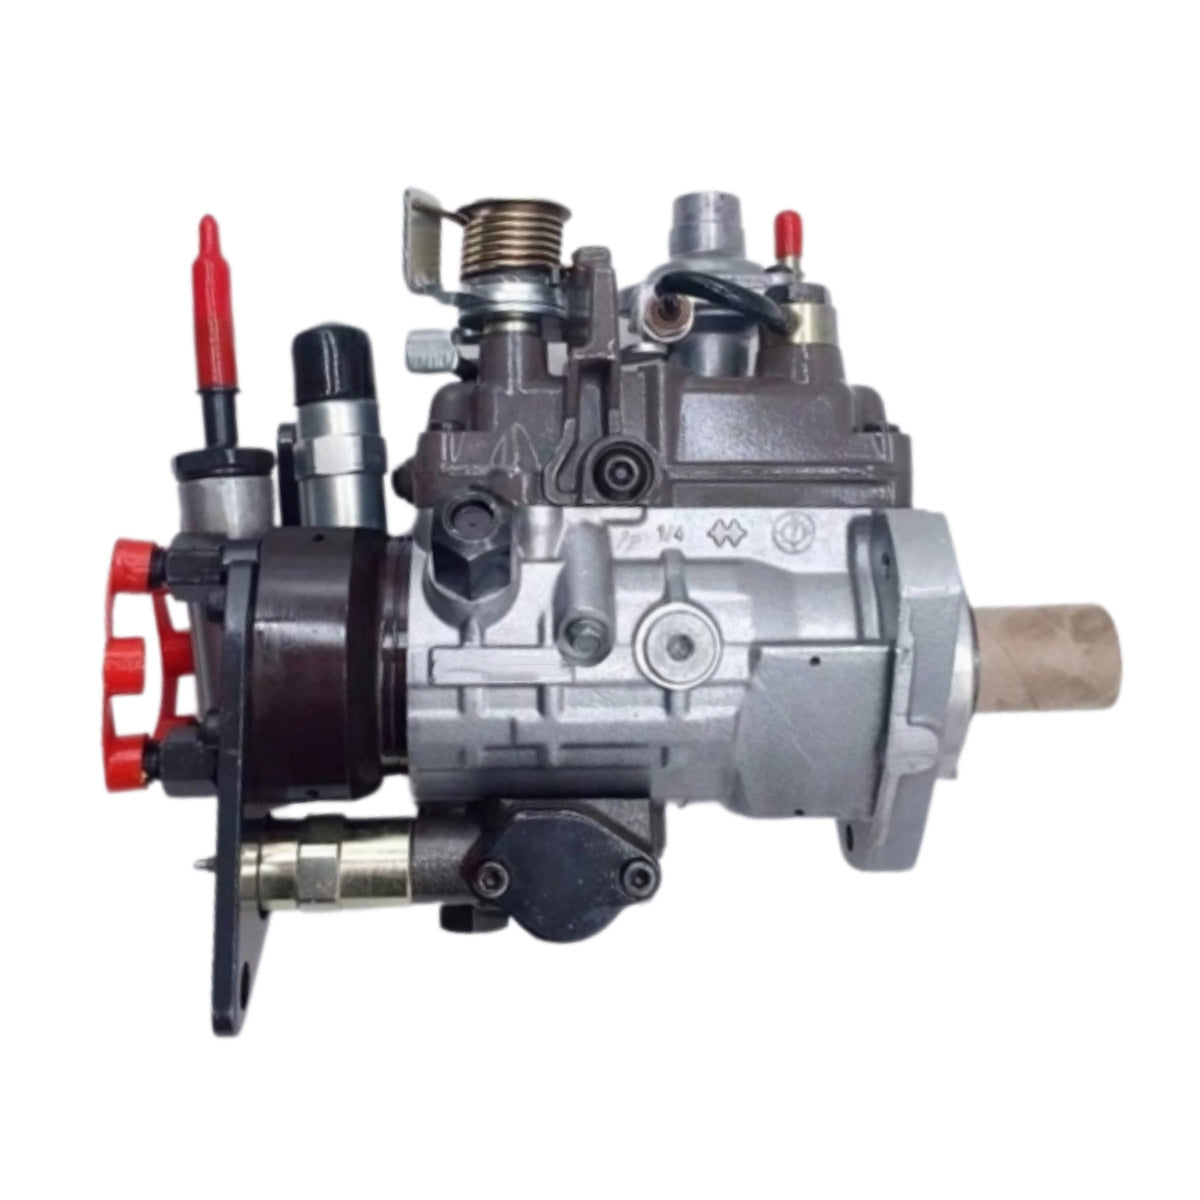 Delphi Fuel Injection Pump 9320A390G 2644H029 for Perkins Engine Vista 4T 1104C-44T - Sinocmp